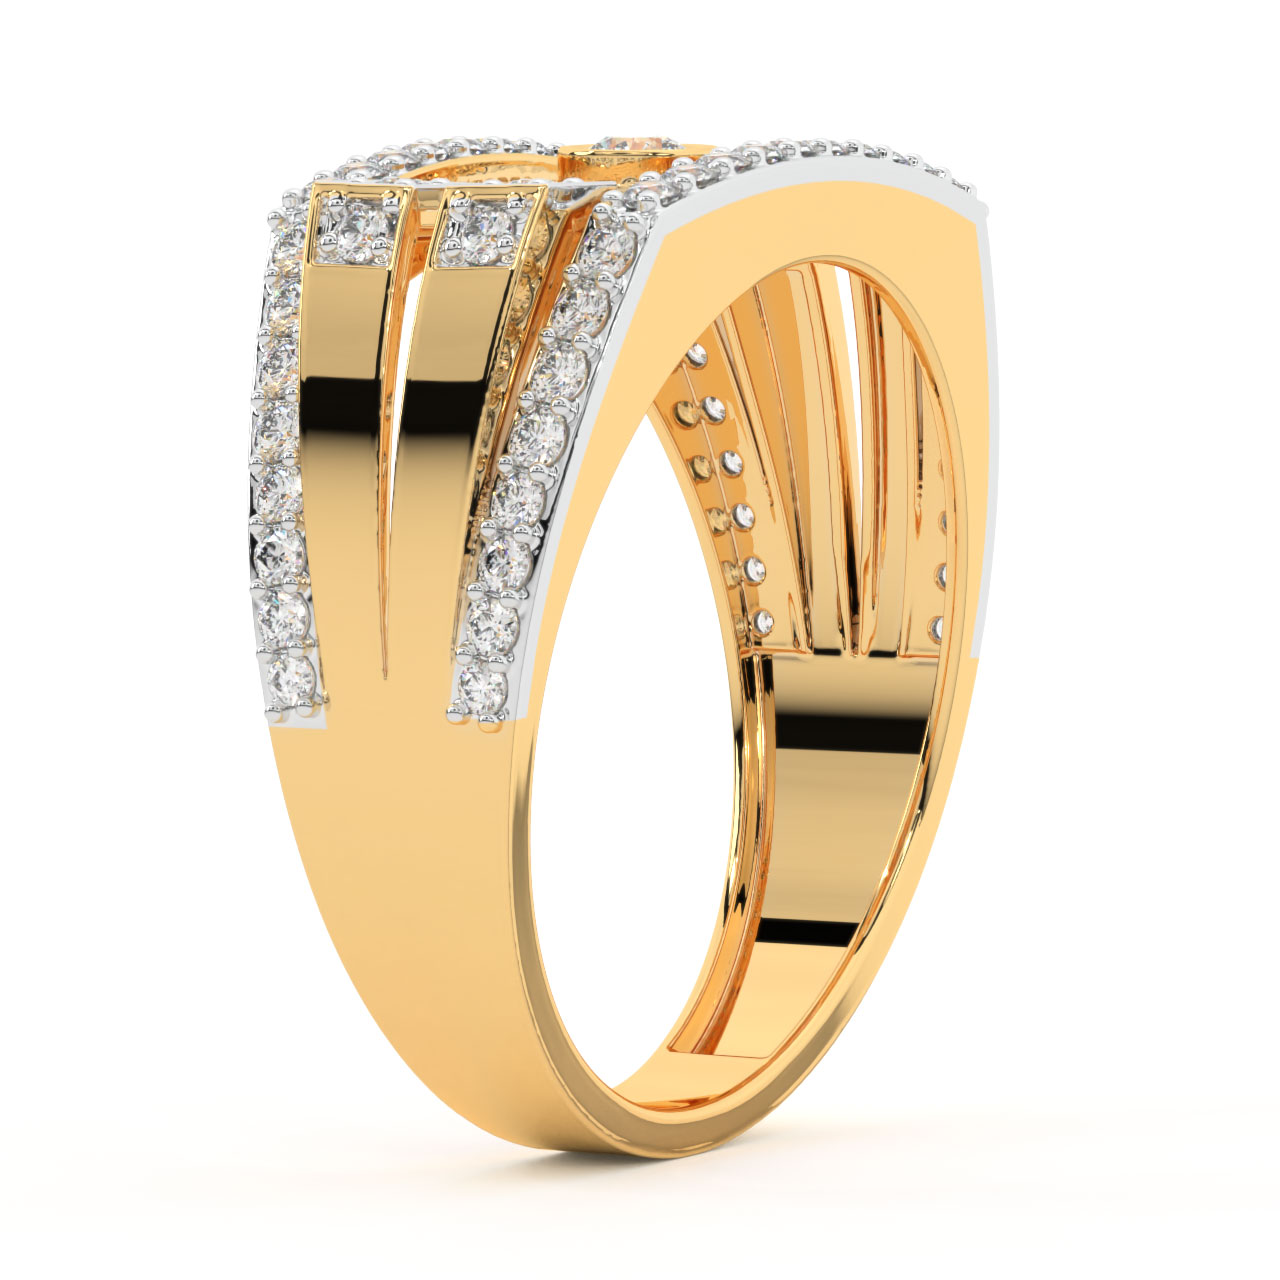 Sandra Round Diamond Ring For Men